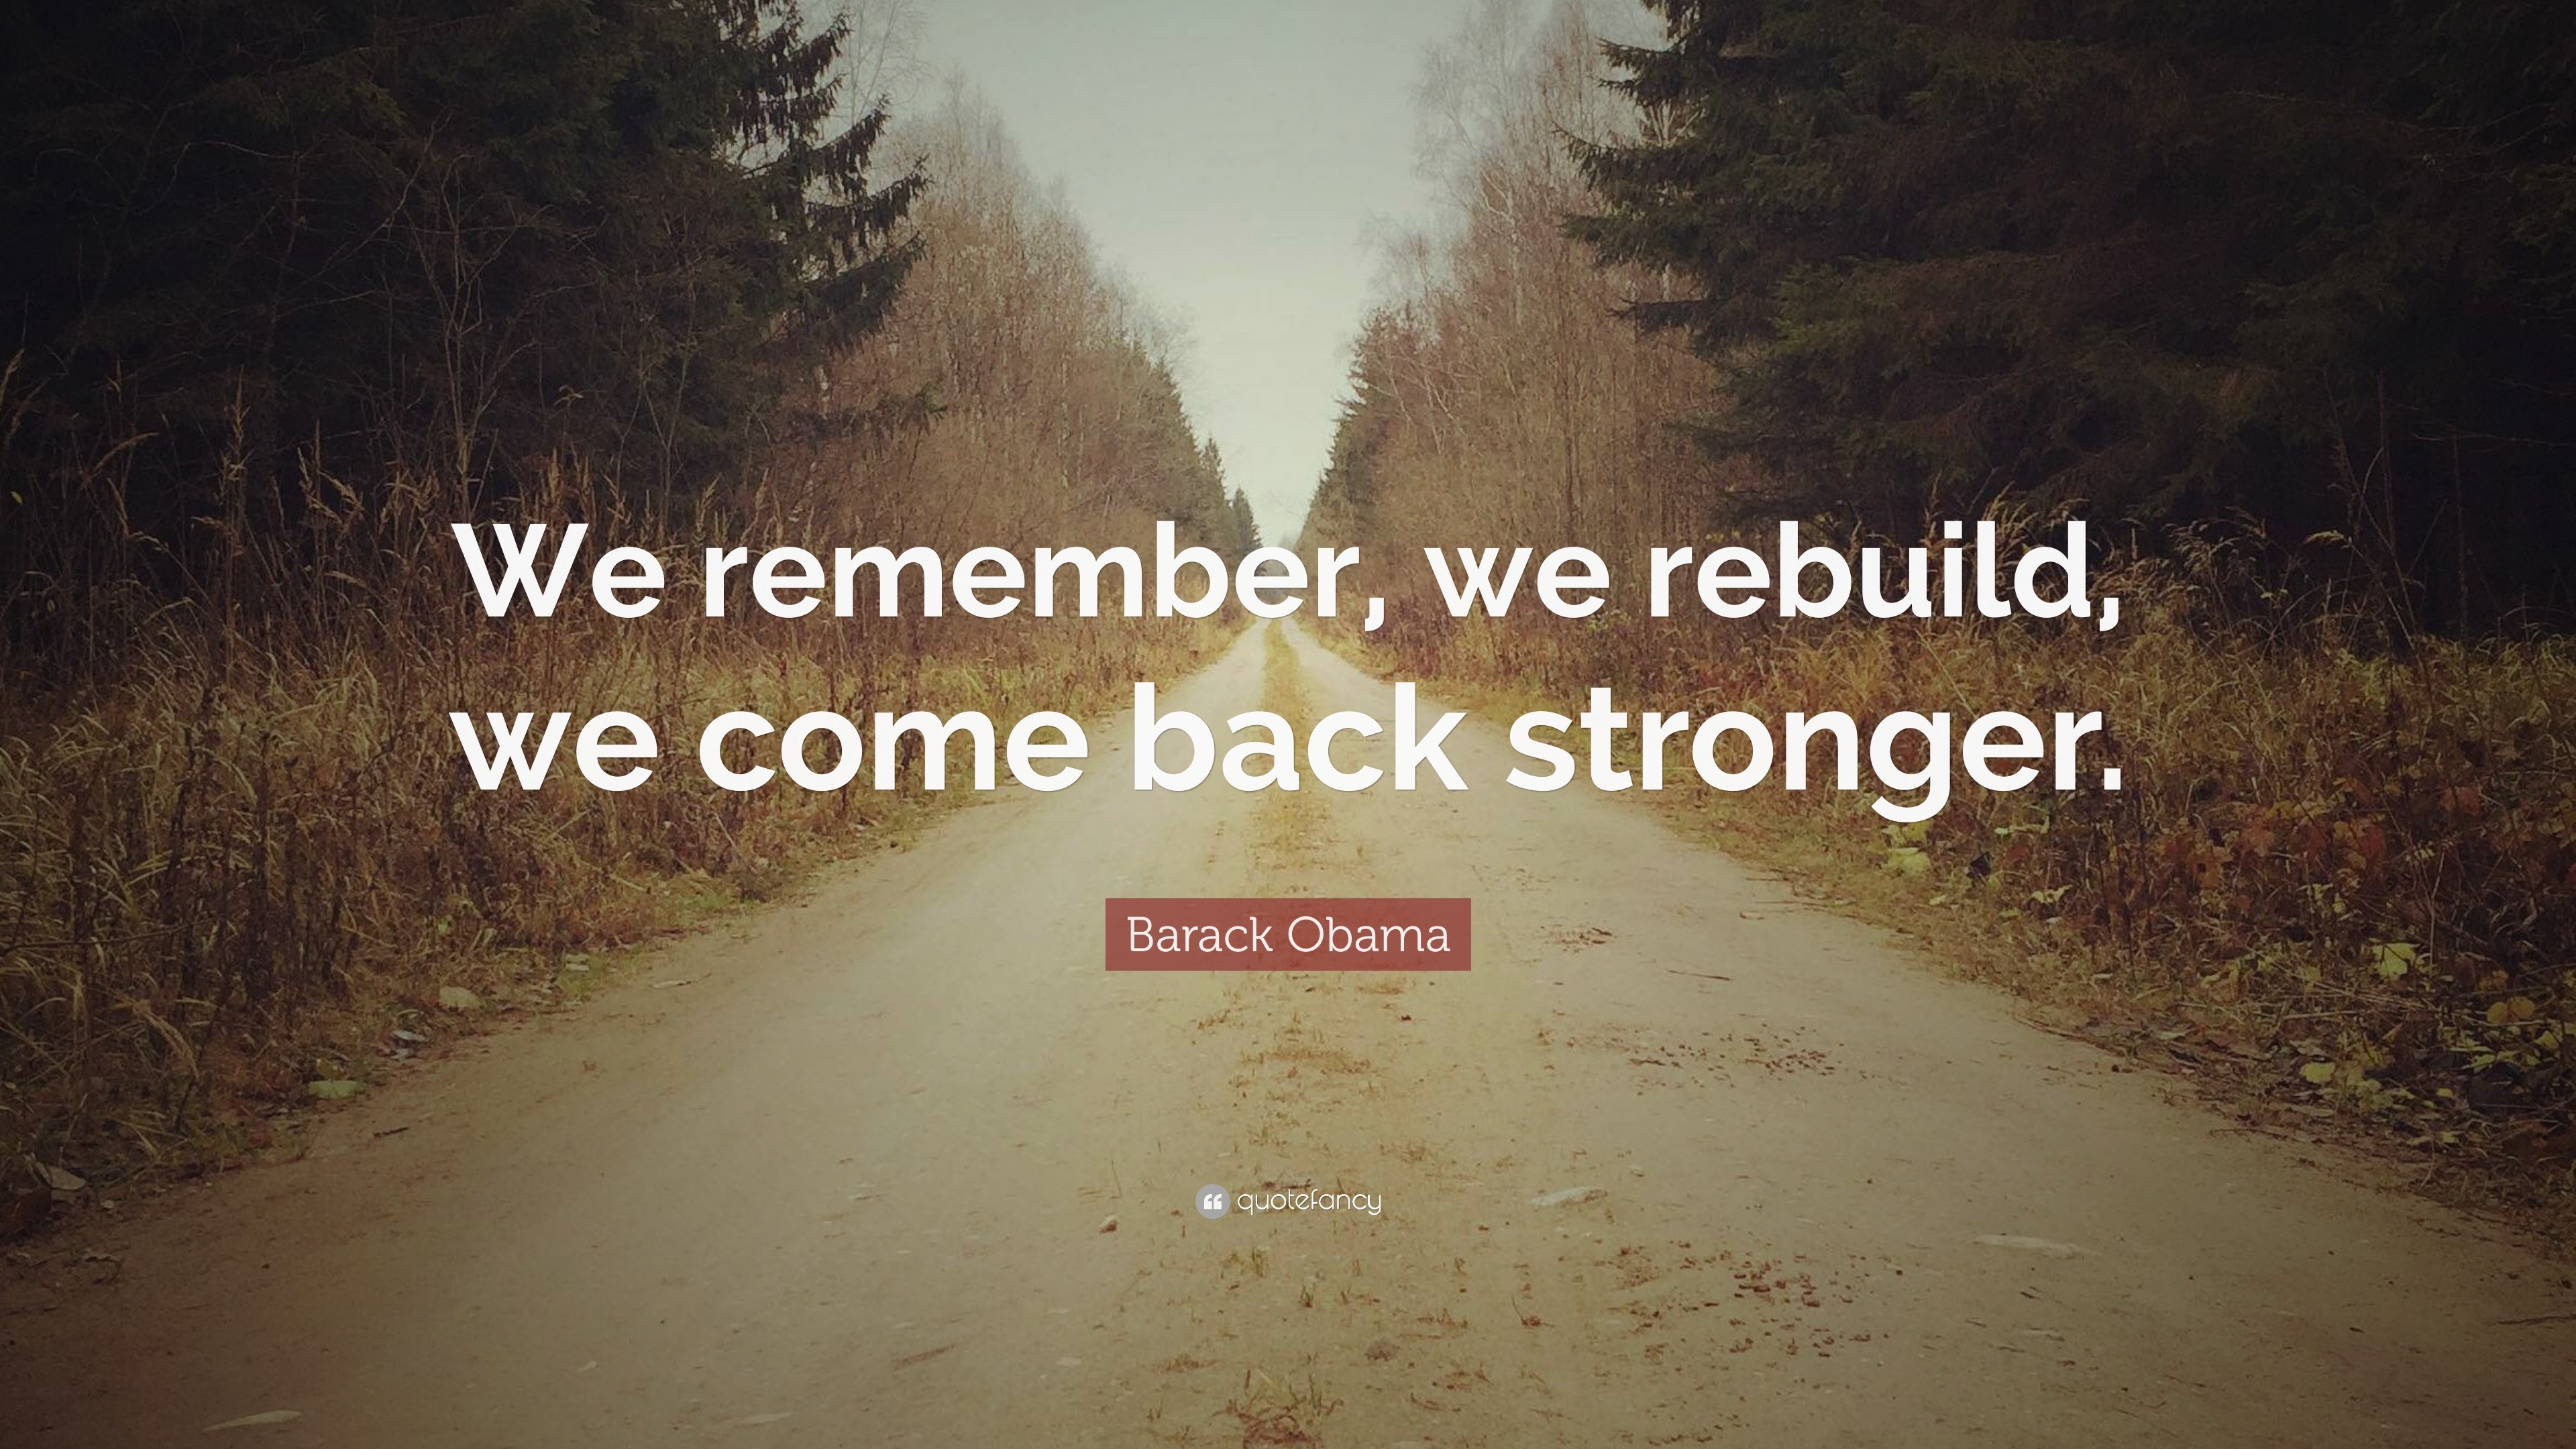 Barack Obama Quote “We remember, we rebuild, we come back stronger.”